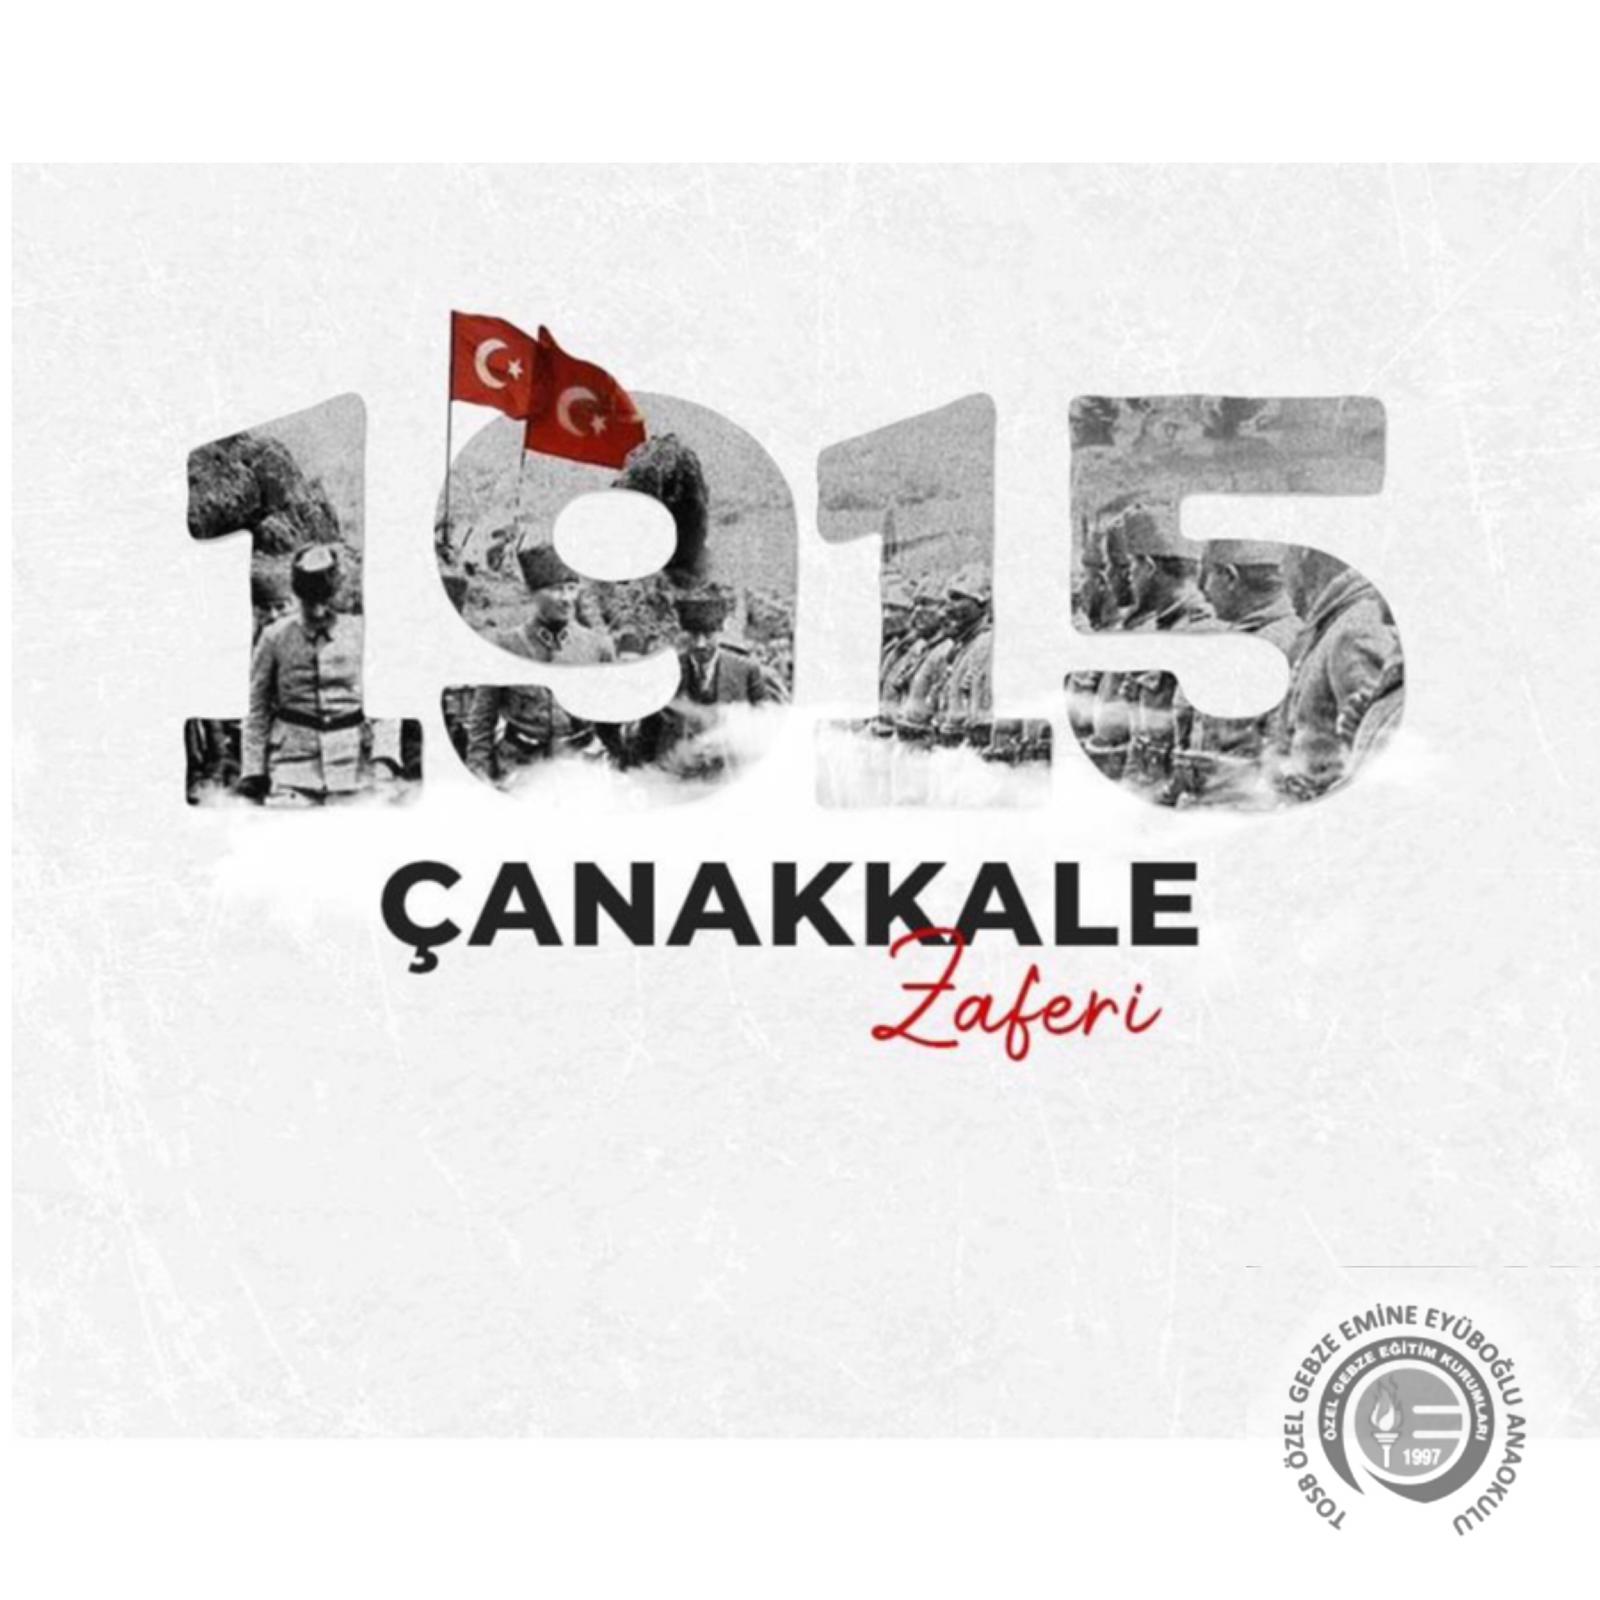 Çanakkale Zaferi’nin 105. Yıl Dönümünde, Cumhuriyetimizin Kurucusu Gazi Mustafa Kemal ATATÜRK ve Kahraman Şehitlerimizi Minnet,Şükran ve Saygıyla Anıyoruz